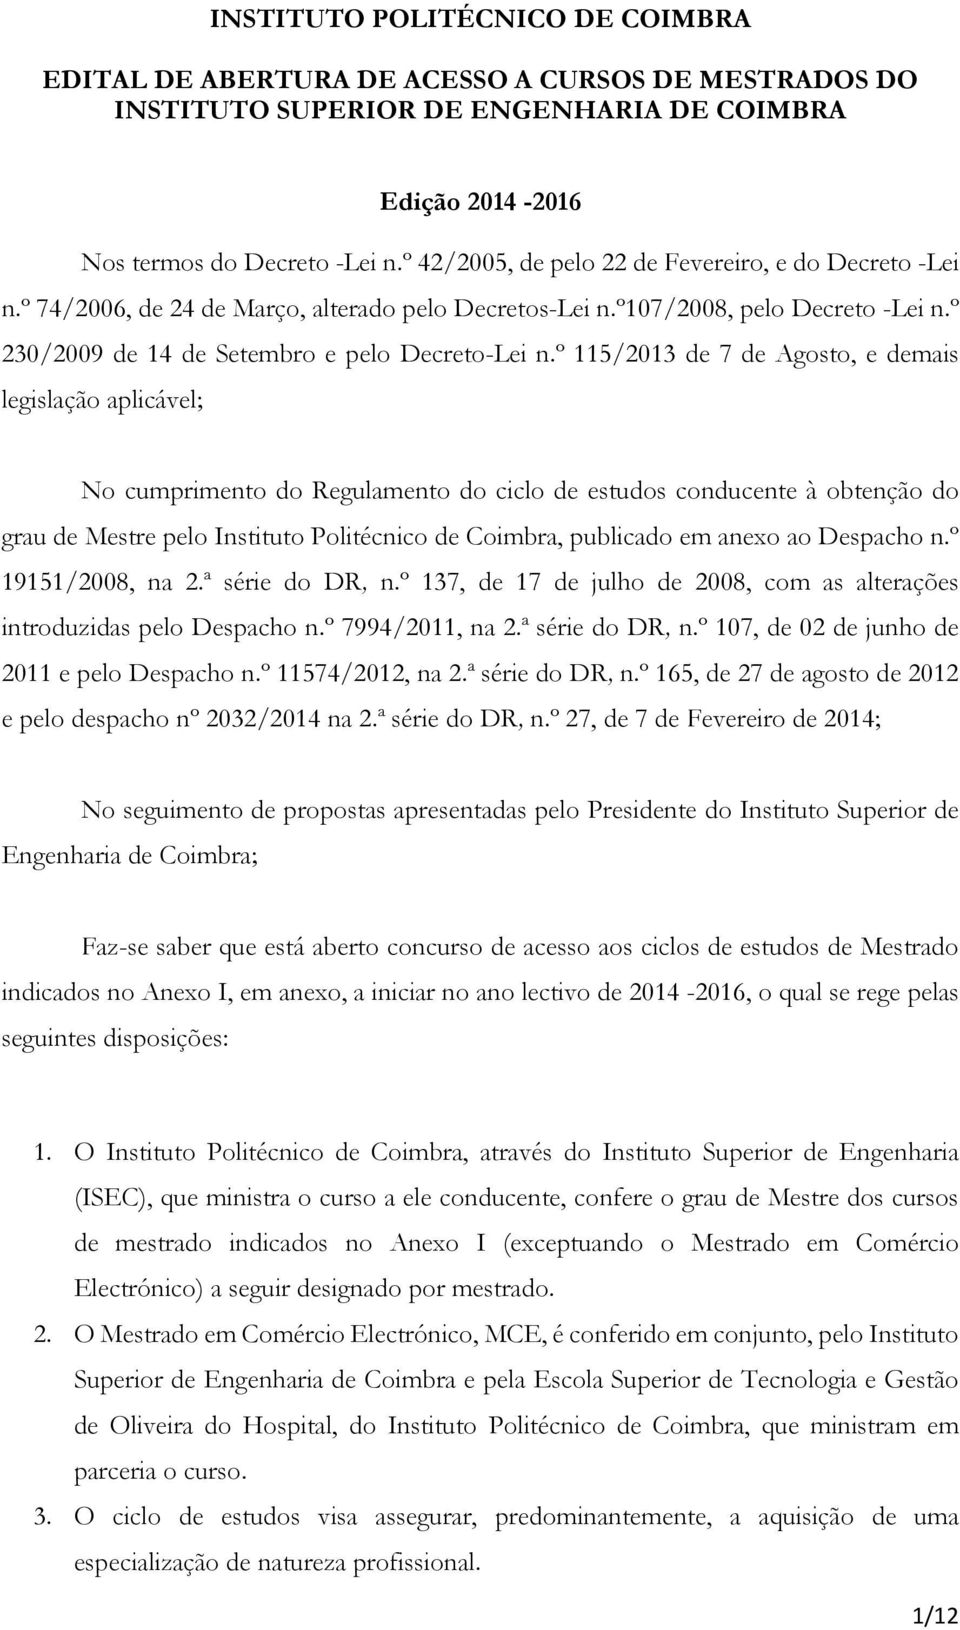 º 115/2013 de 7 de Agosto, e demais legislação aplicável; No cumprimento do Regulamento do ciclo de estudos conducente à obtenção do grau de Mestre pelo Instituto Politécnico de Coimbra, publicado em